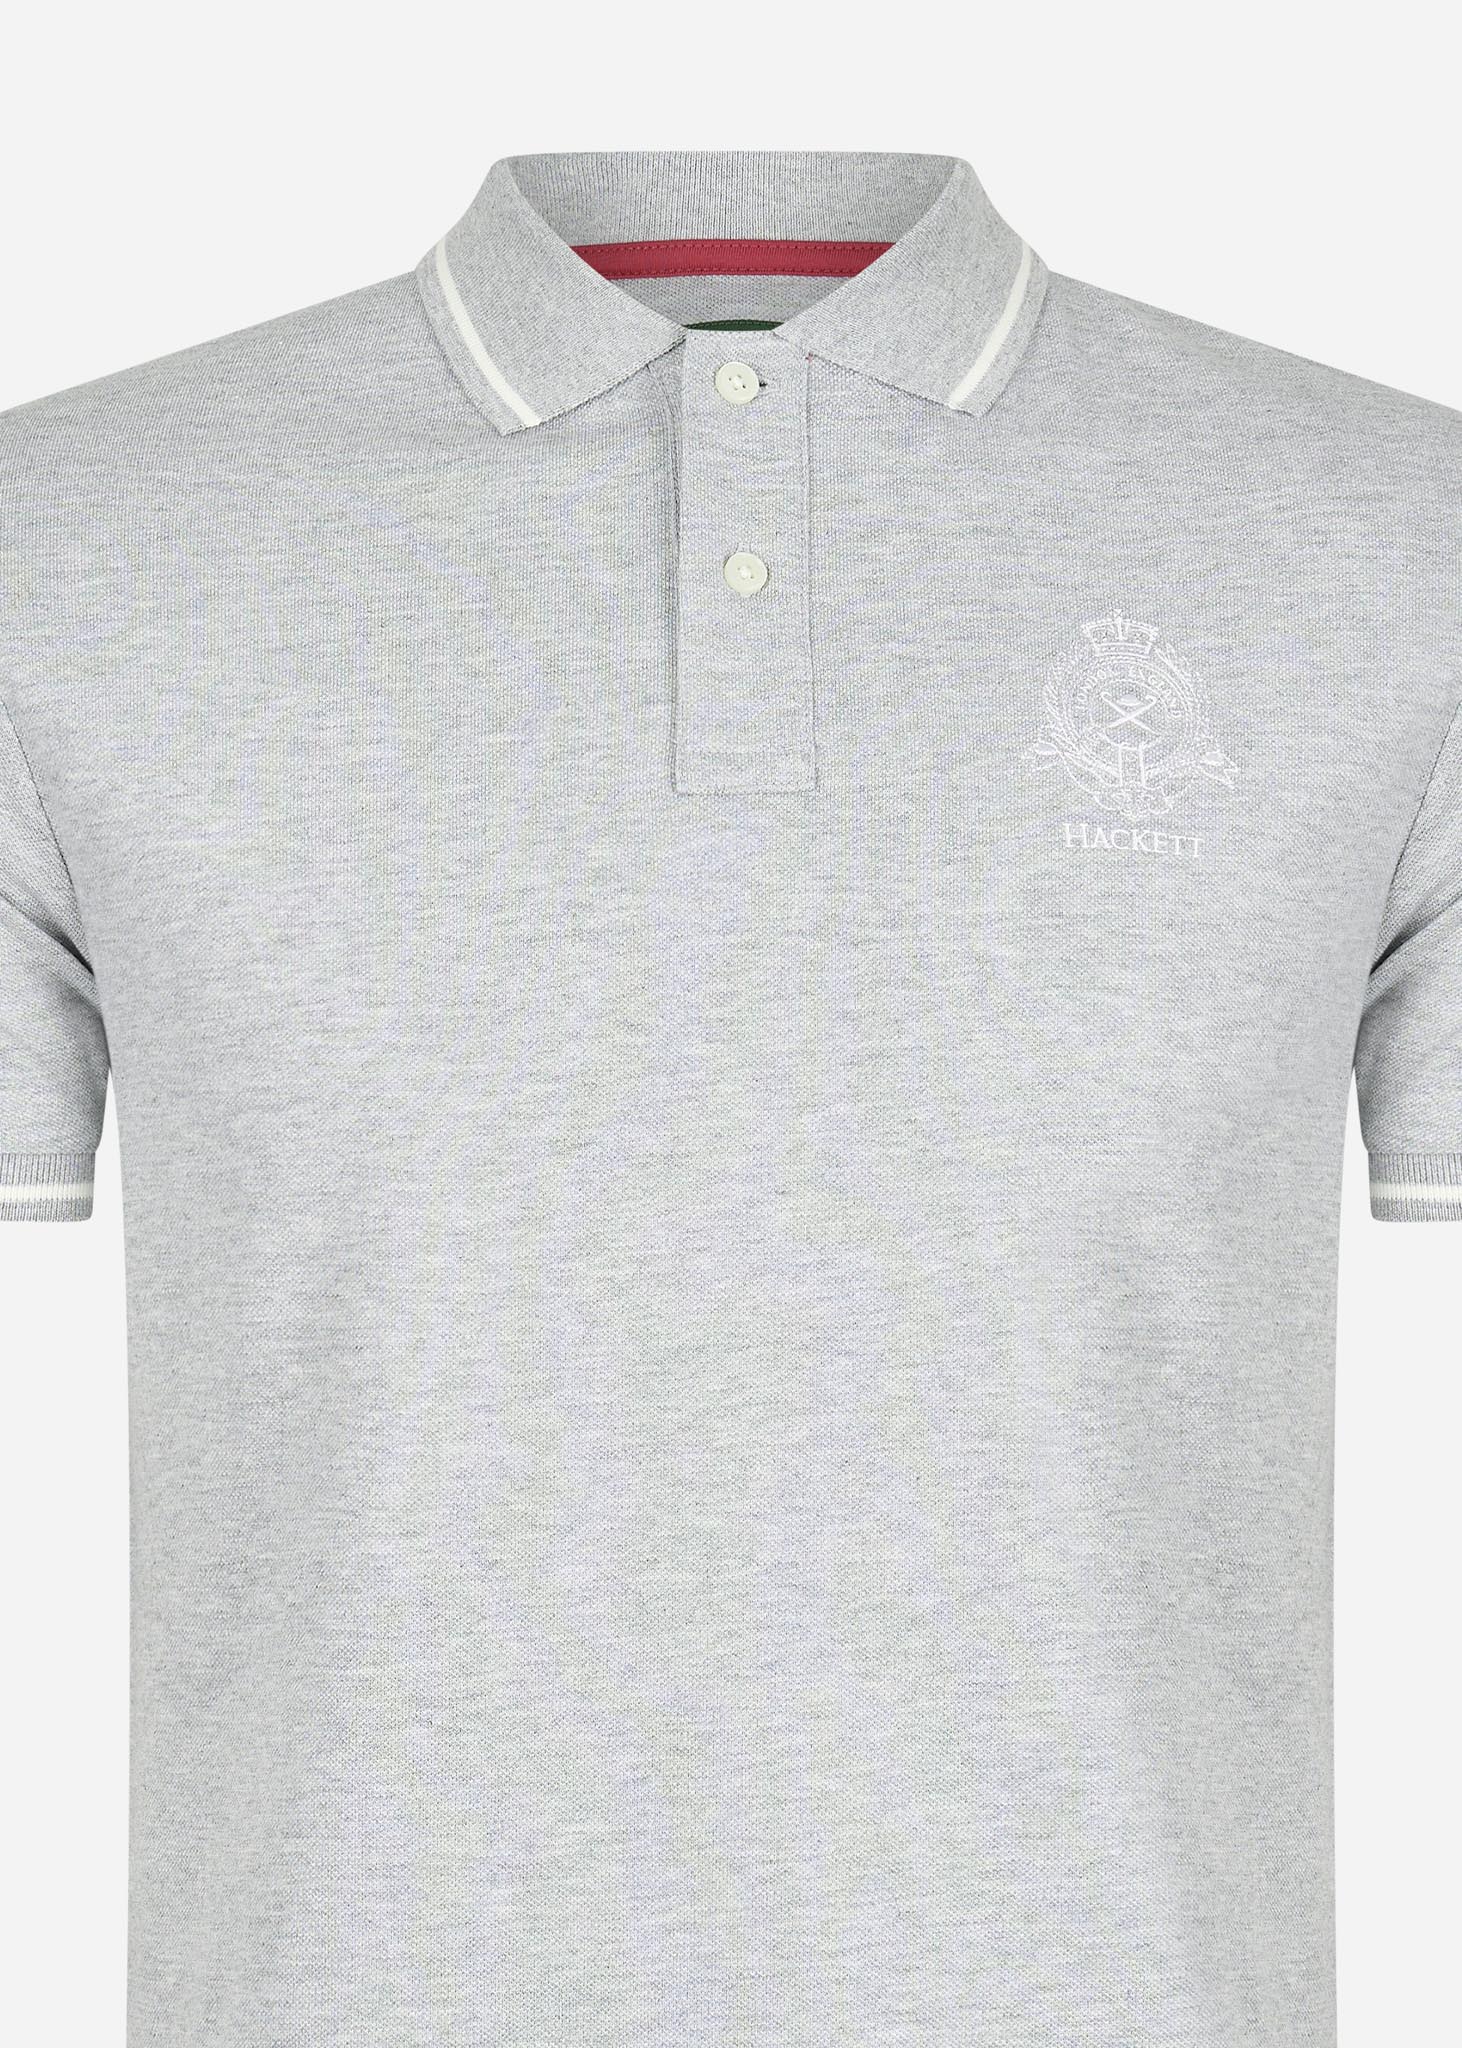 Hackett London Polo's  Heritage logo polo - grey marl 